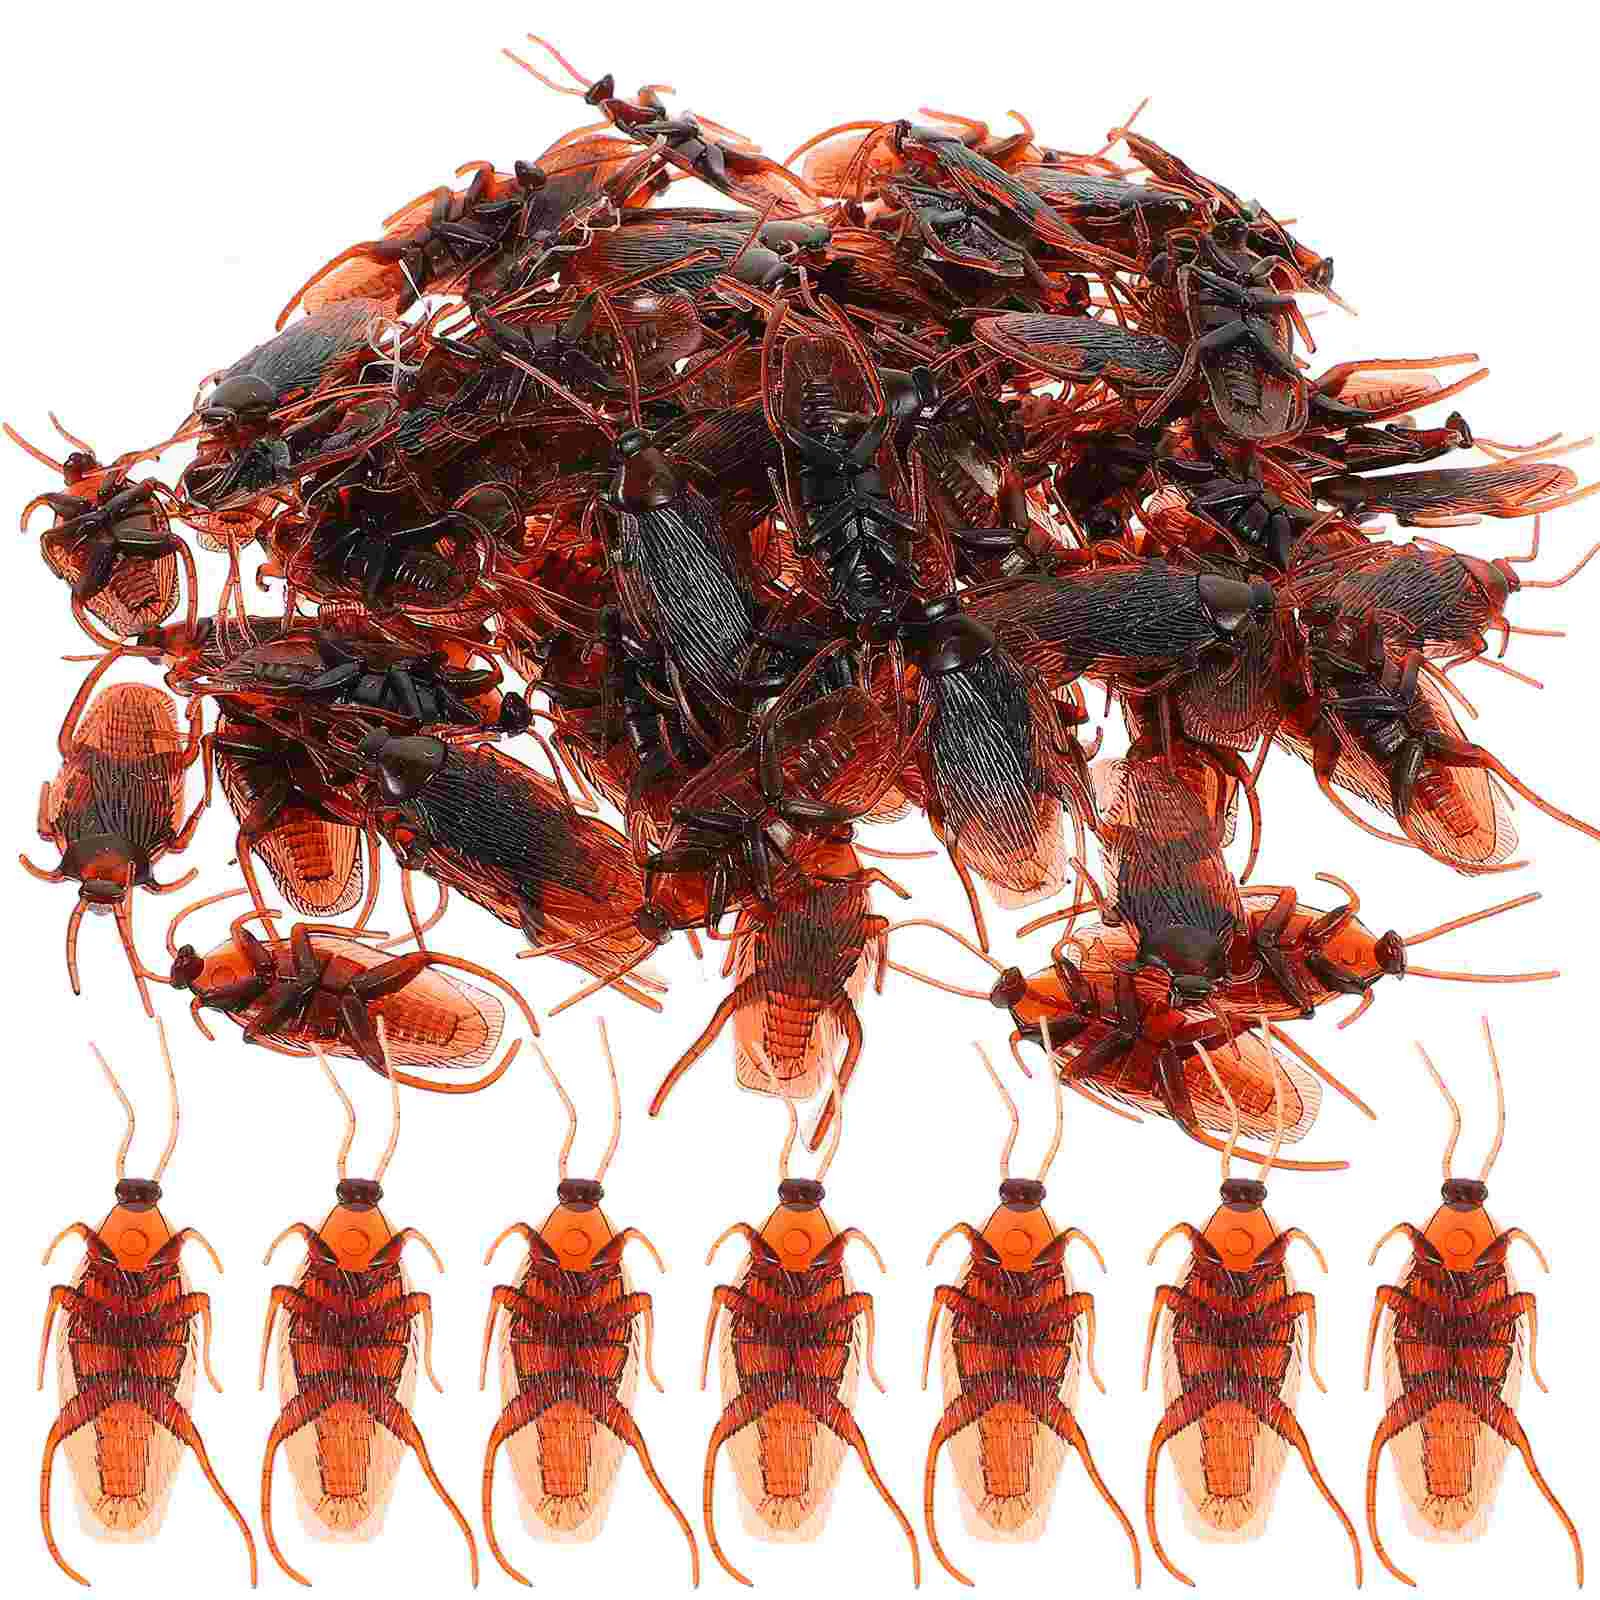 

TINKSKY, 100 шт., искусственные жуки, пластиковые жуки тараканов, выглядят реально на Хэллоуин, забавные игрушки